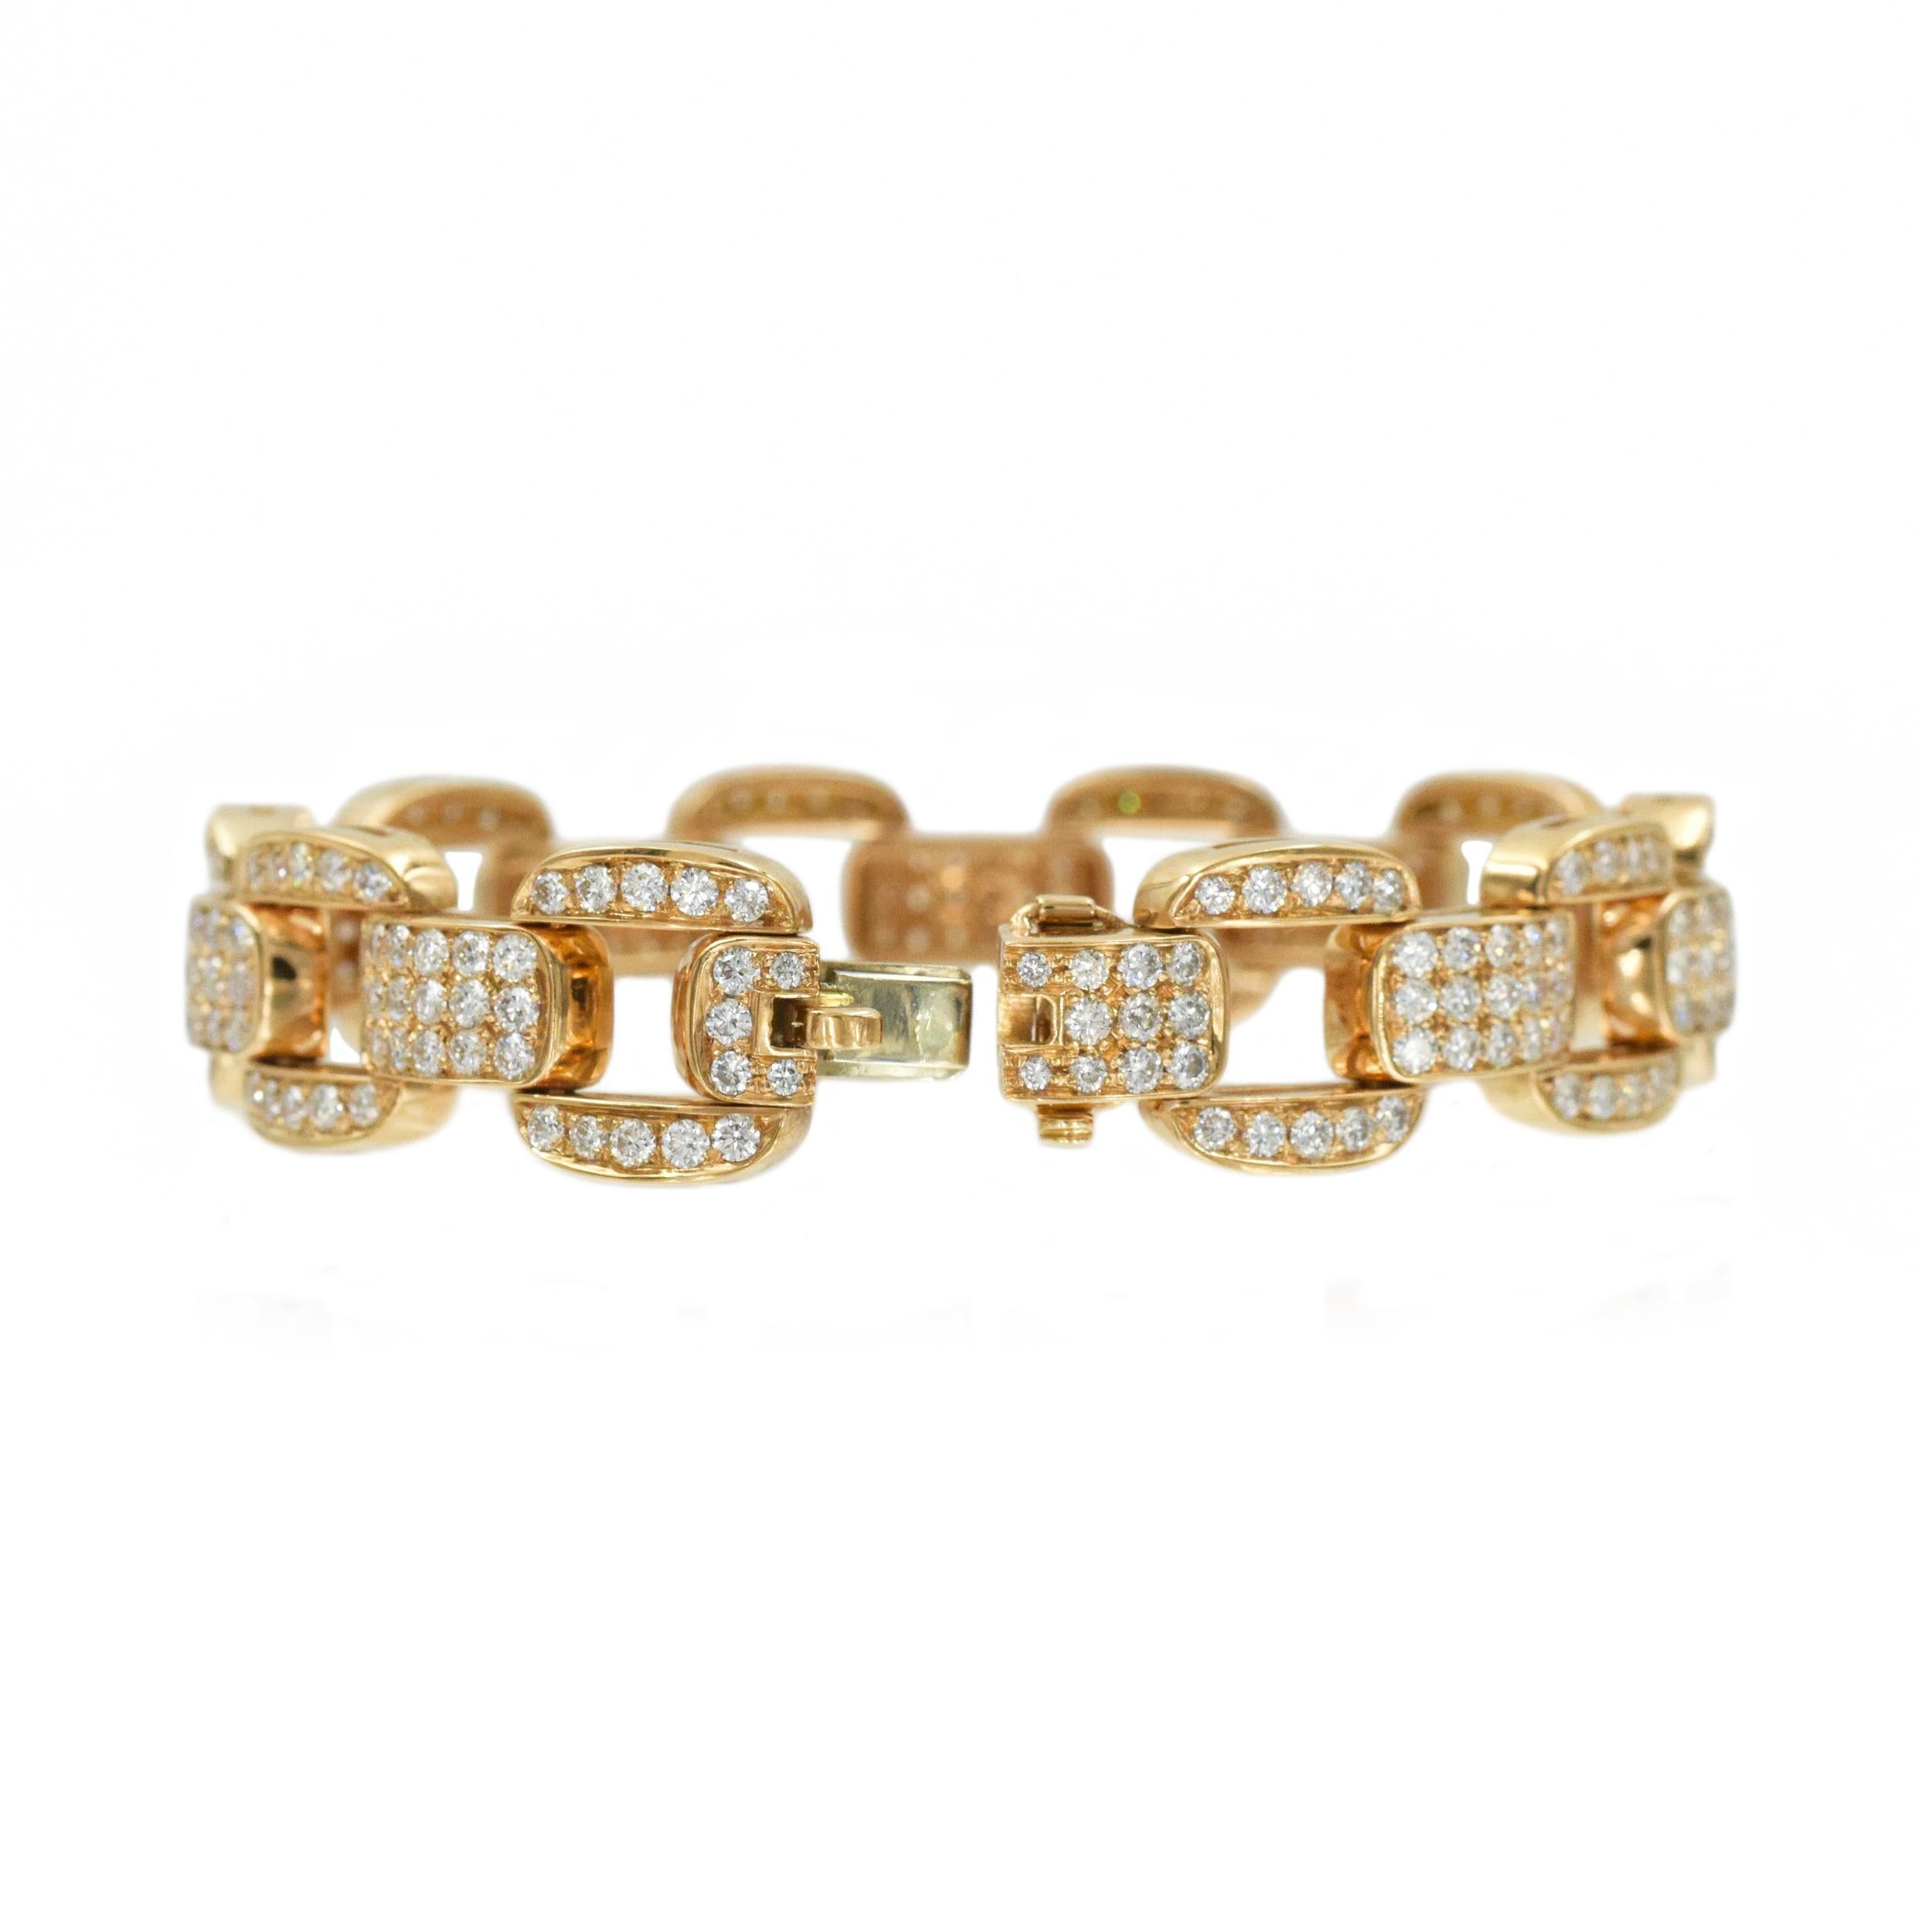 Women's Oscar Heyman Diamond Bracelet in 18k Rose Gold